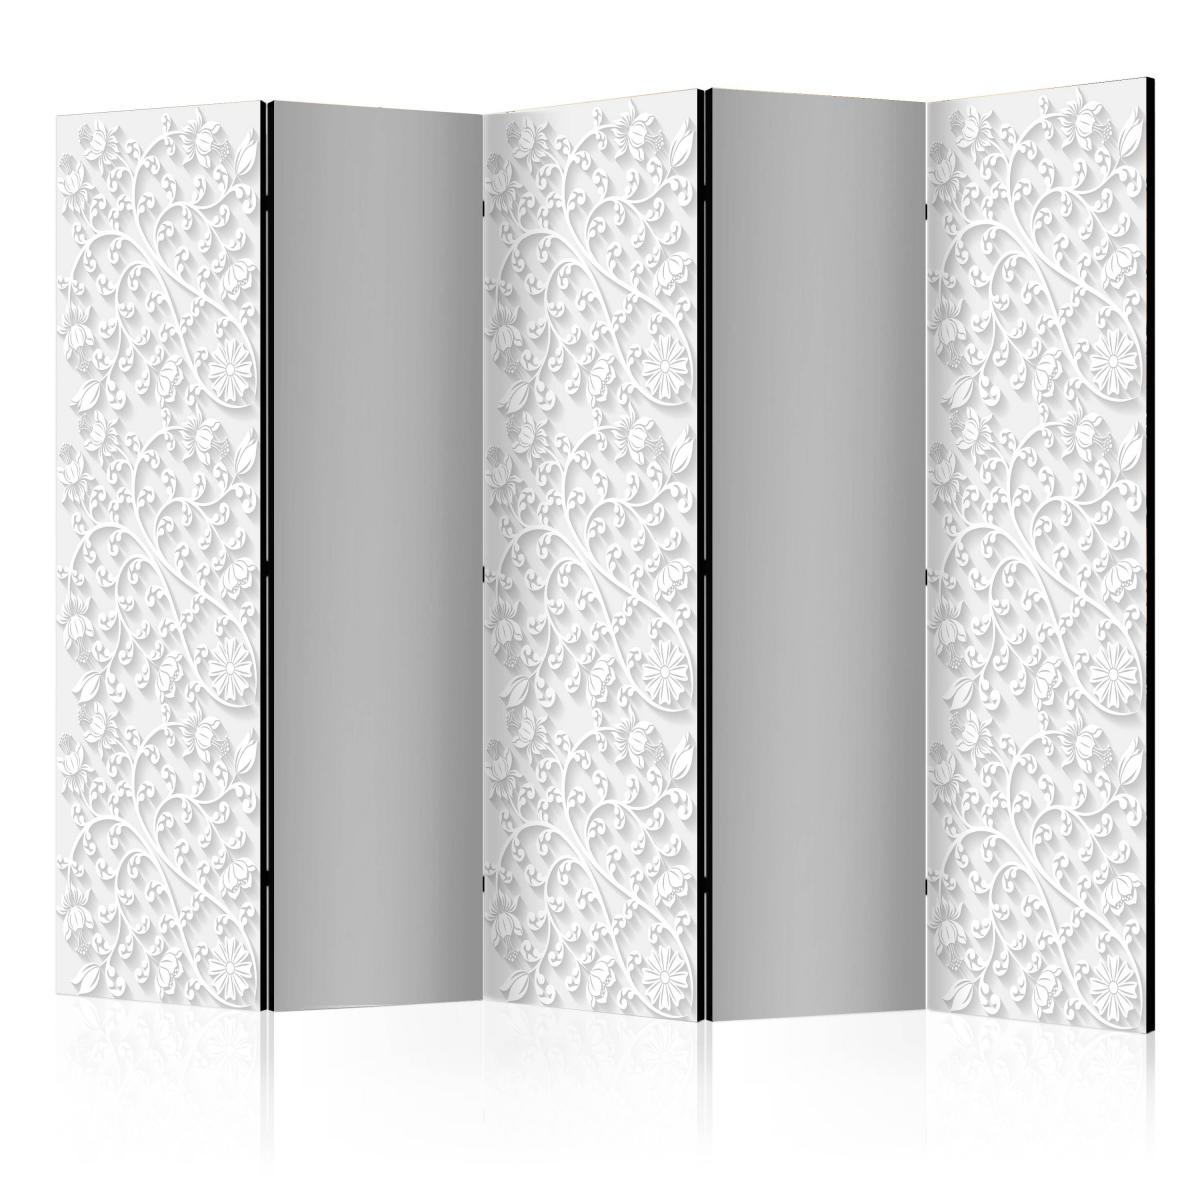 Bimago - Paravent 5 volets - Room divider – Floral pattern II - Décoration, image, art | 225x172 cm | XL - Grand Format | - Cloisons